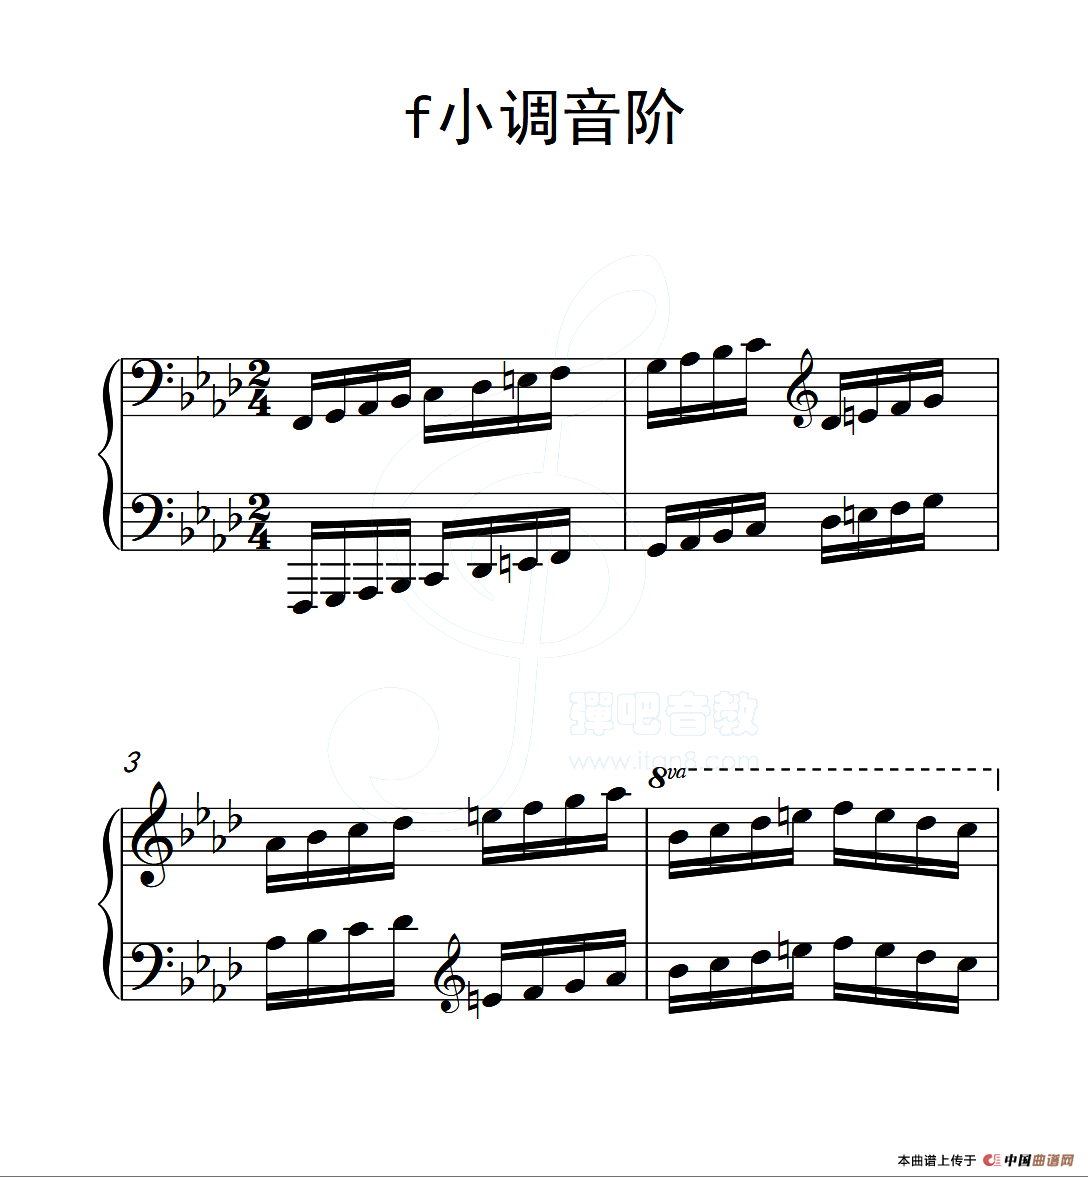 第六级 f小调音阶(中国音乐学院钢琴考级作品1~6级)(1)